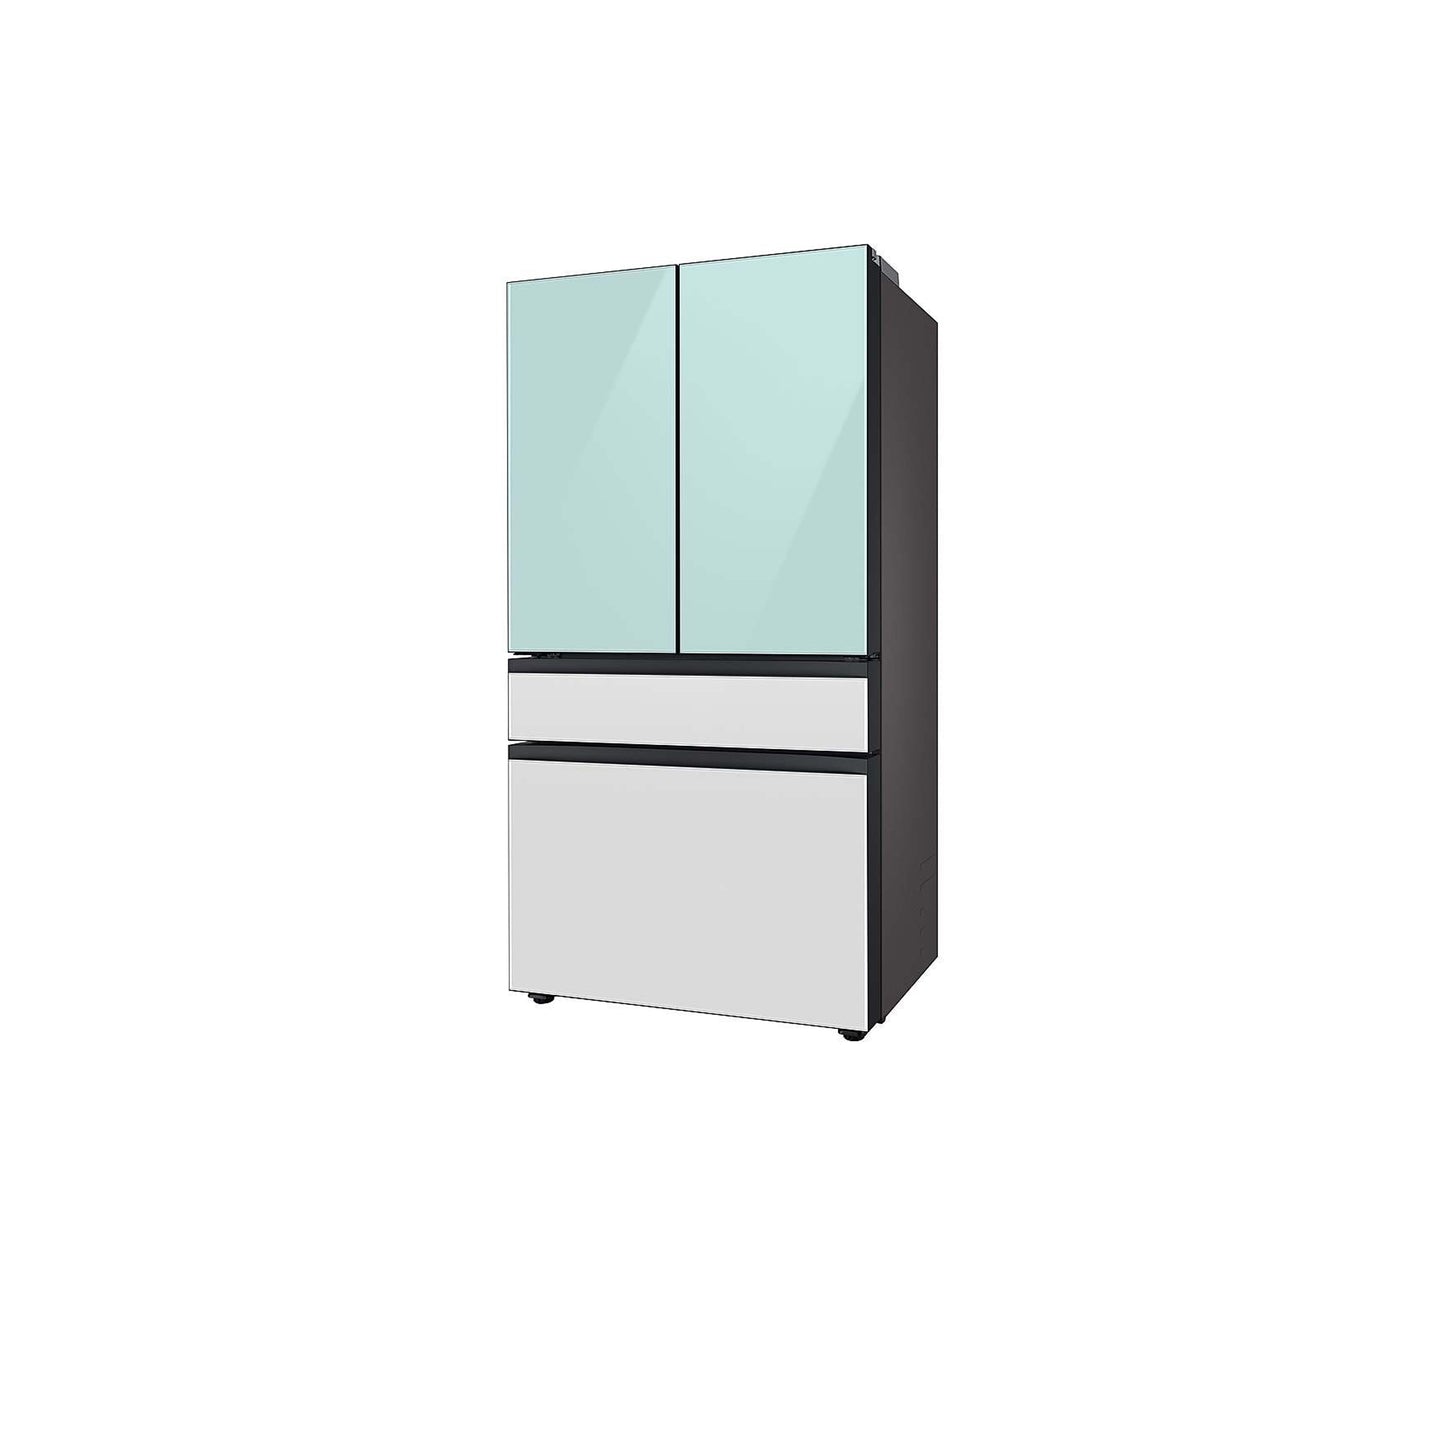 ثلاجة مخصصة بباب فرنسي بأربعة أبواب (23 قدمًا مكعبًا) مع ألواح علوية من الزجاج باللون الأزرق الصباحي وألواح وسطى وسفلية من الزجاج الأبيض